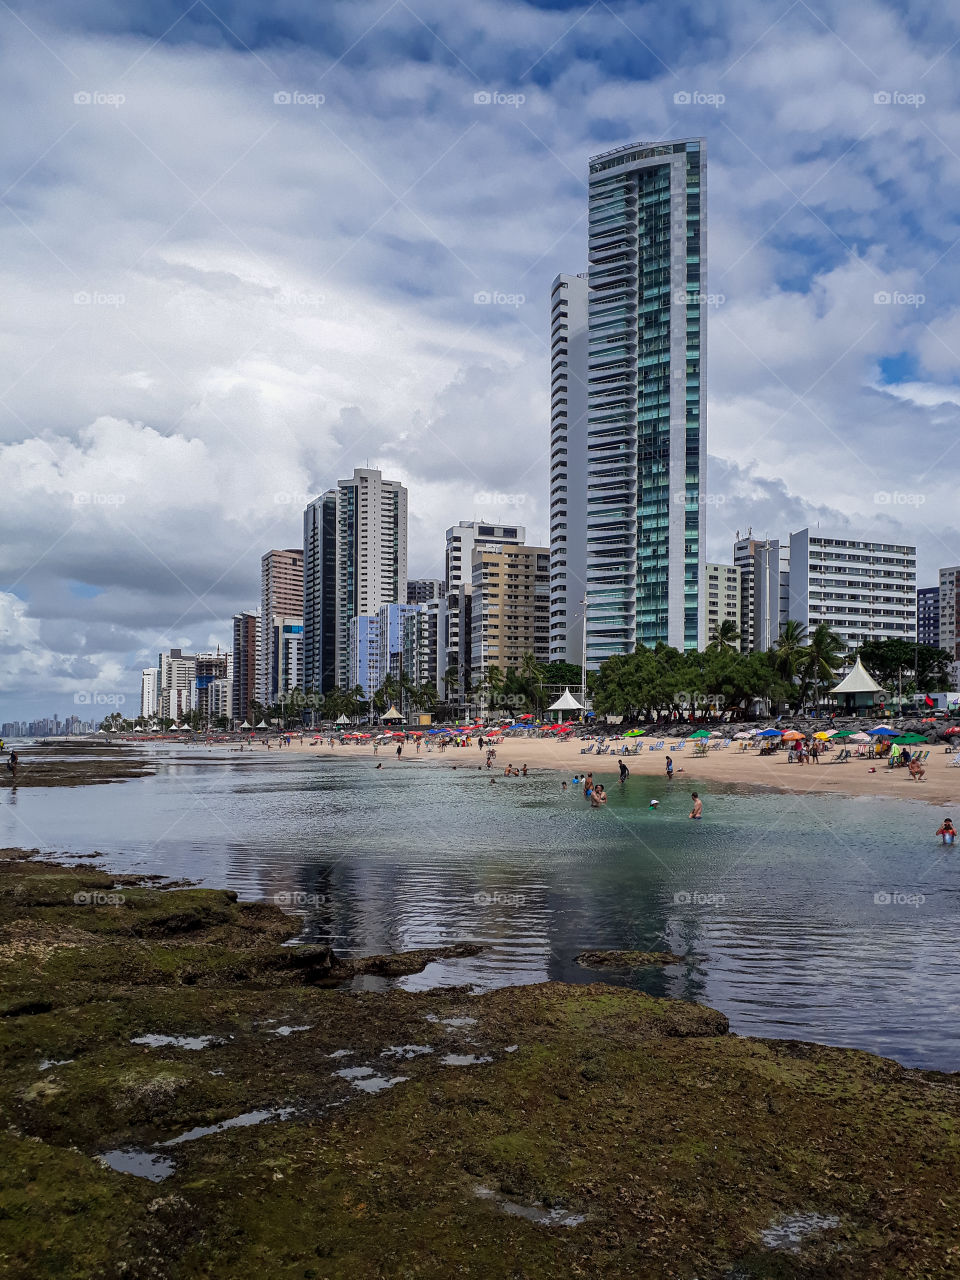 Boa Viagem beach ! Brazil, Recife-PE.